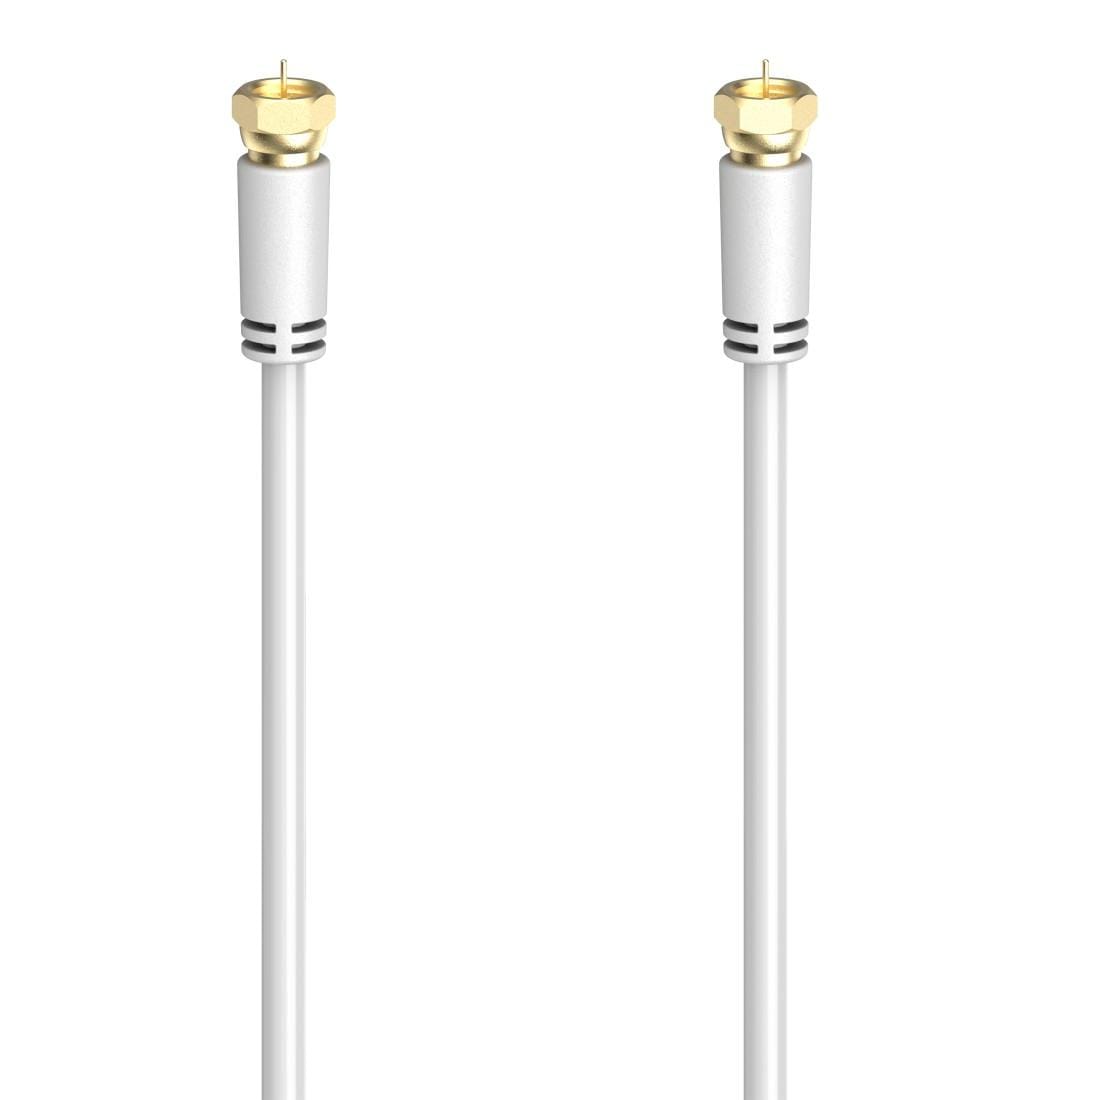 Hama SAT-Kabel »SAT-Anschlusskabel,F-Stecker -F-Stecker,1,5 - 5m vergoldet 100 dB,Weiß«, 300 cm